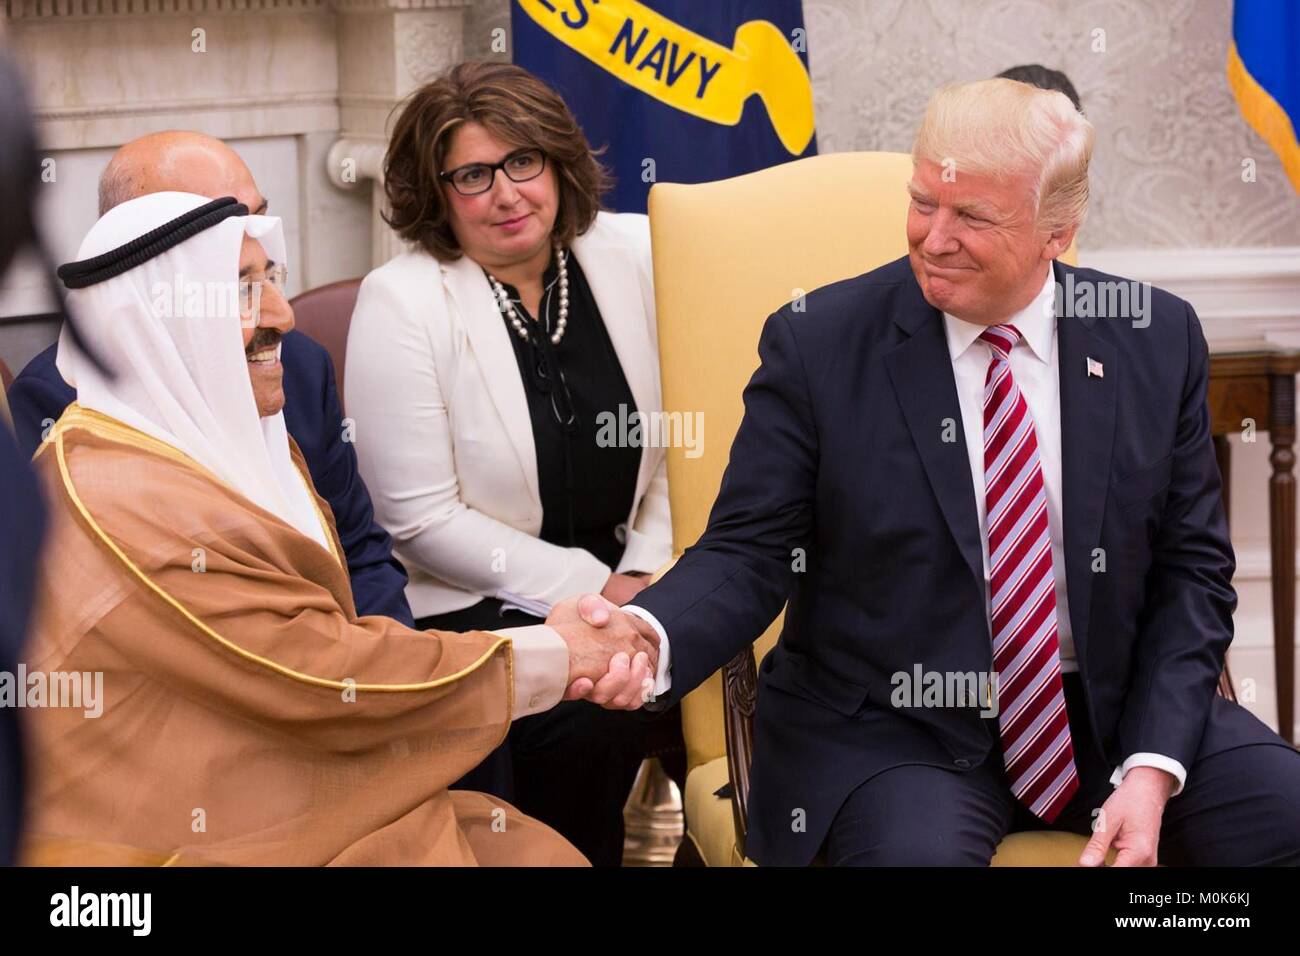 L'Émir du Koweït Sabah al-Ahmed al-Jaber al-Sabah (à gauche) rencontre le président américain Donald Trump à la Maison Blanche le 7 septembre 2017 à Washington, DC. Banque D'Images